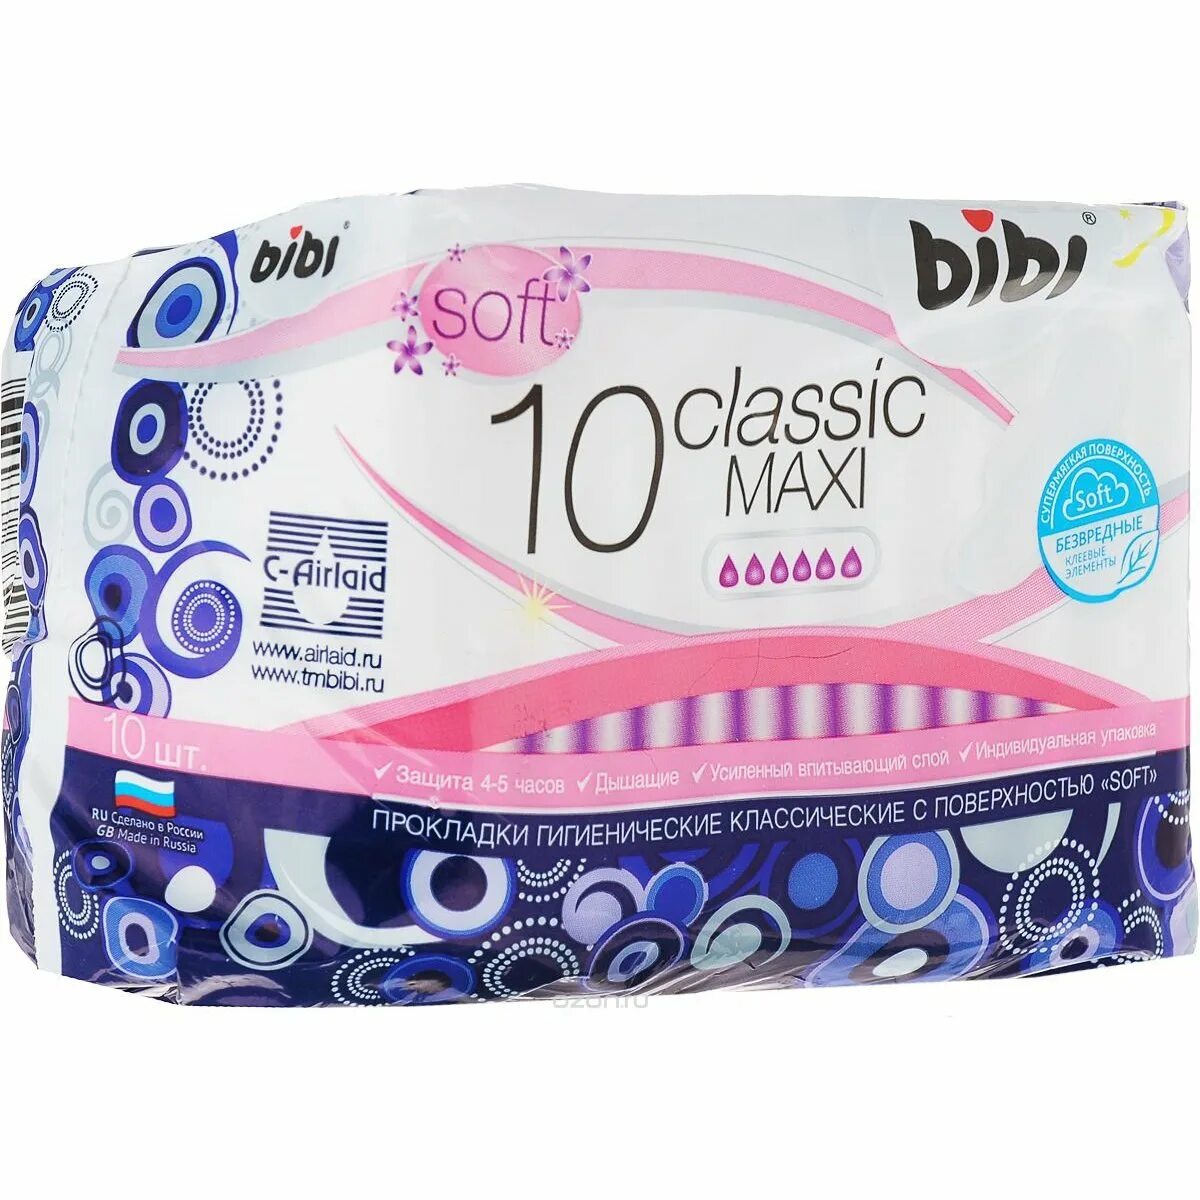 Какие прокладки покупаете. Прокладки гигиенические Bibi Classic Maxi Soft 10шт. Bibi Classic Maxi Soft, 10. Прокладки Bibi, Classic Dry, Maxi, гигиенические, 10шт. Bibi Классик макси софт 10шт.